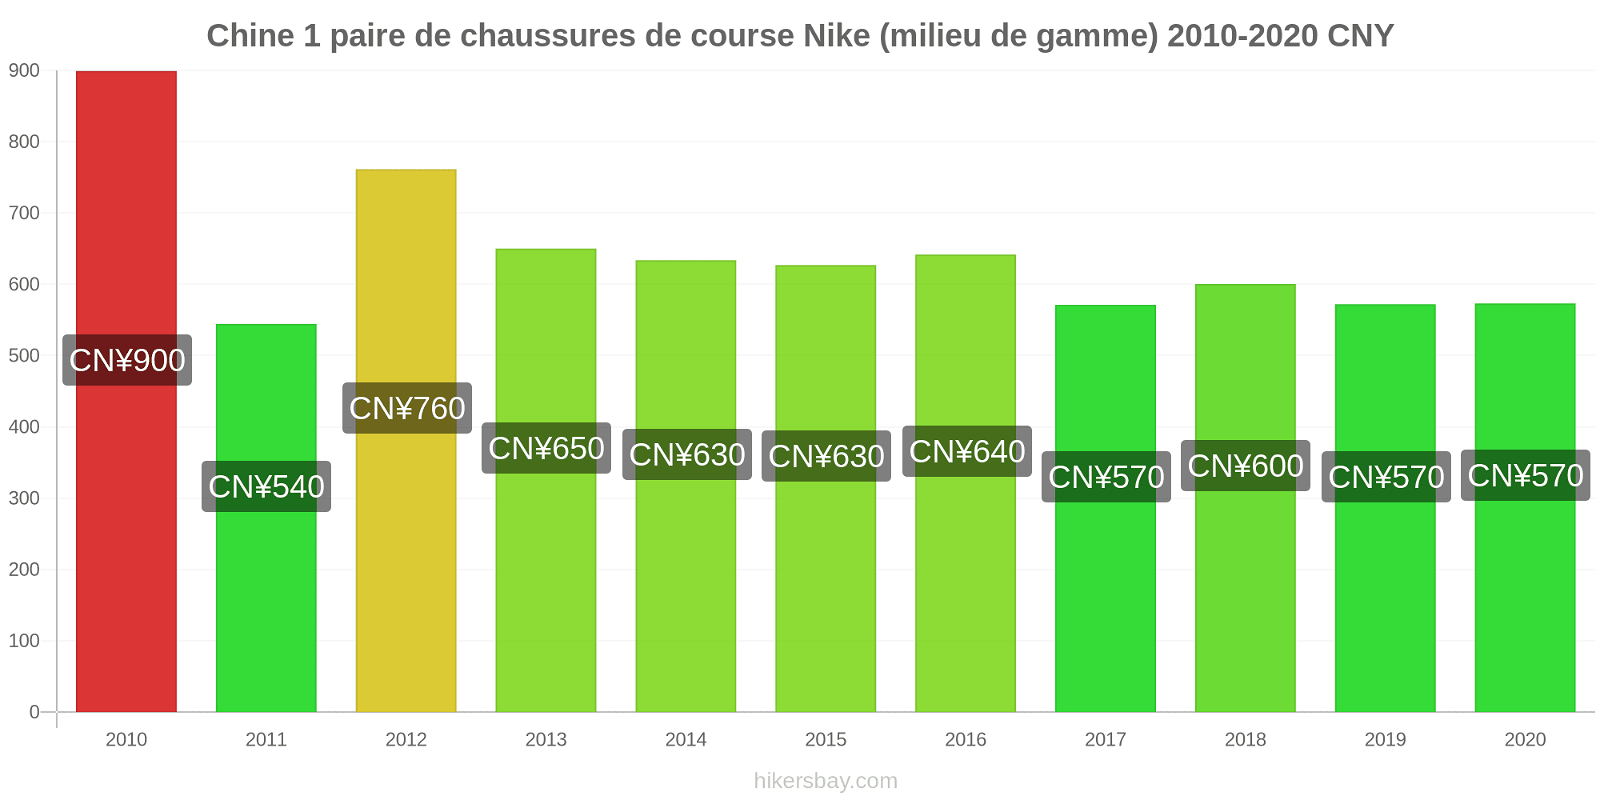 Chine changements de prix 1 paire de chaussures de course Nike (milieu de gamme) hikersbay.com